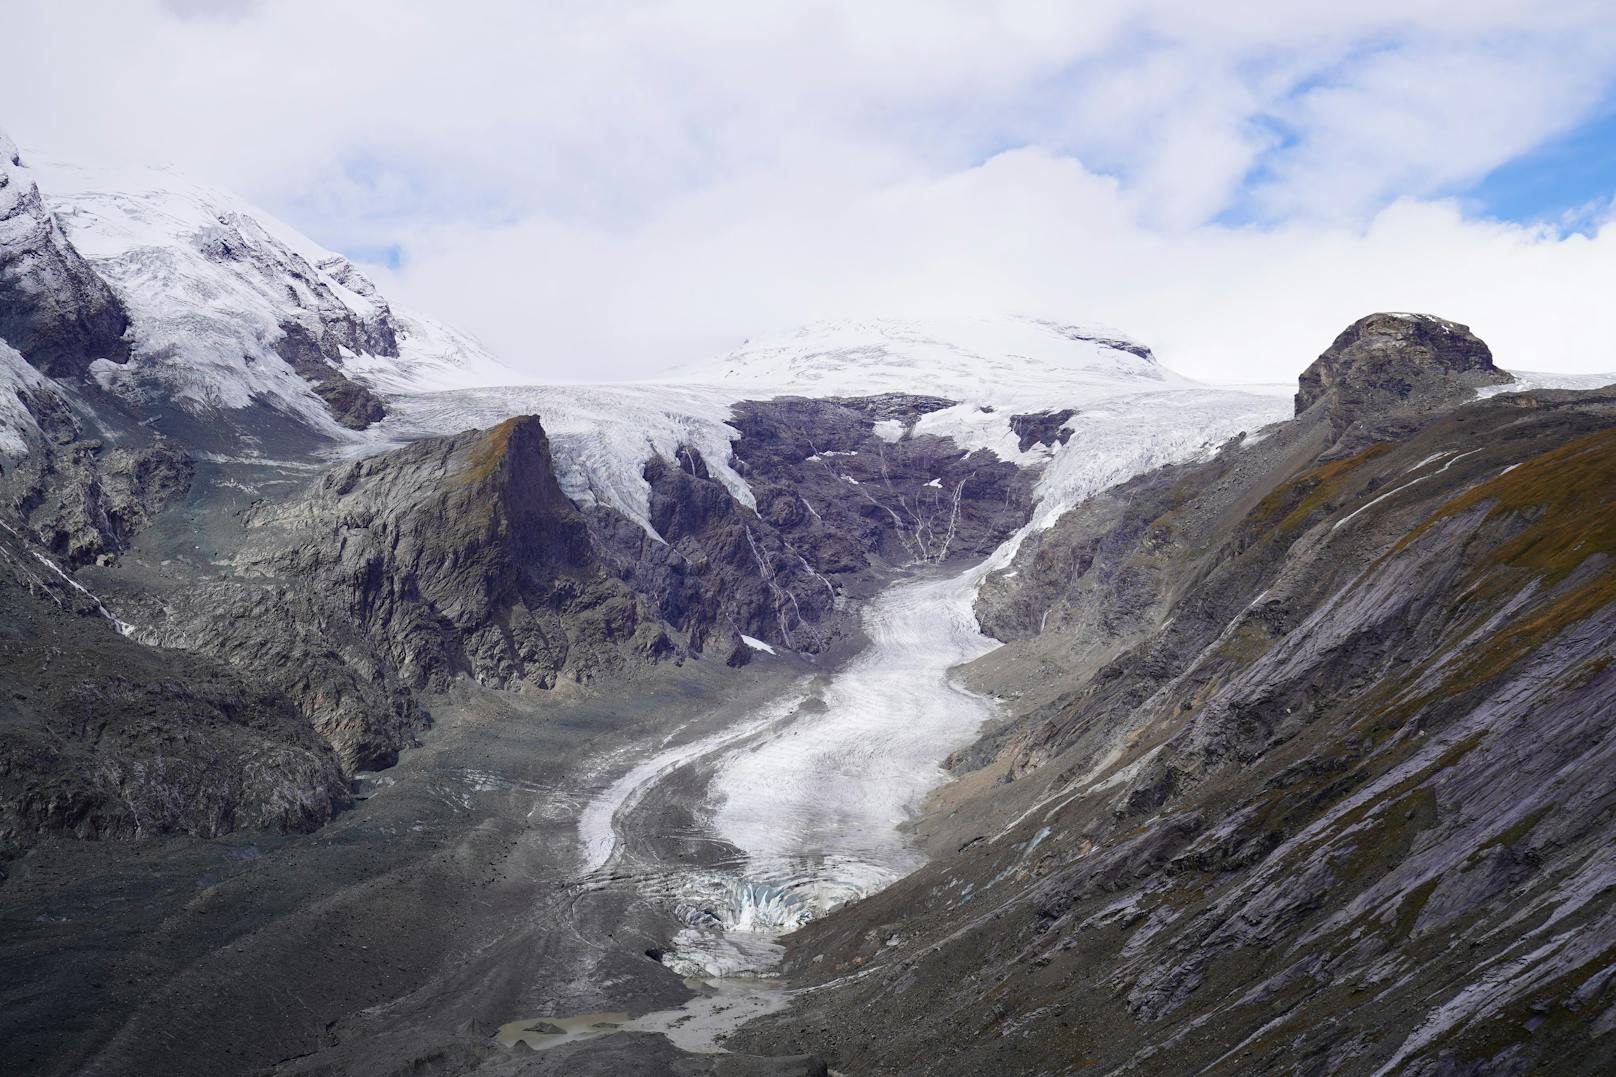 Neuer Bericht warnt vor Folgen des Gletscherschwunds